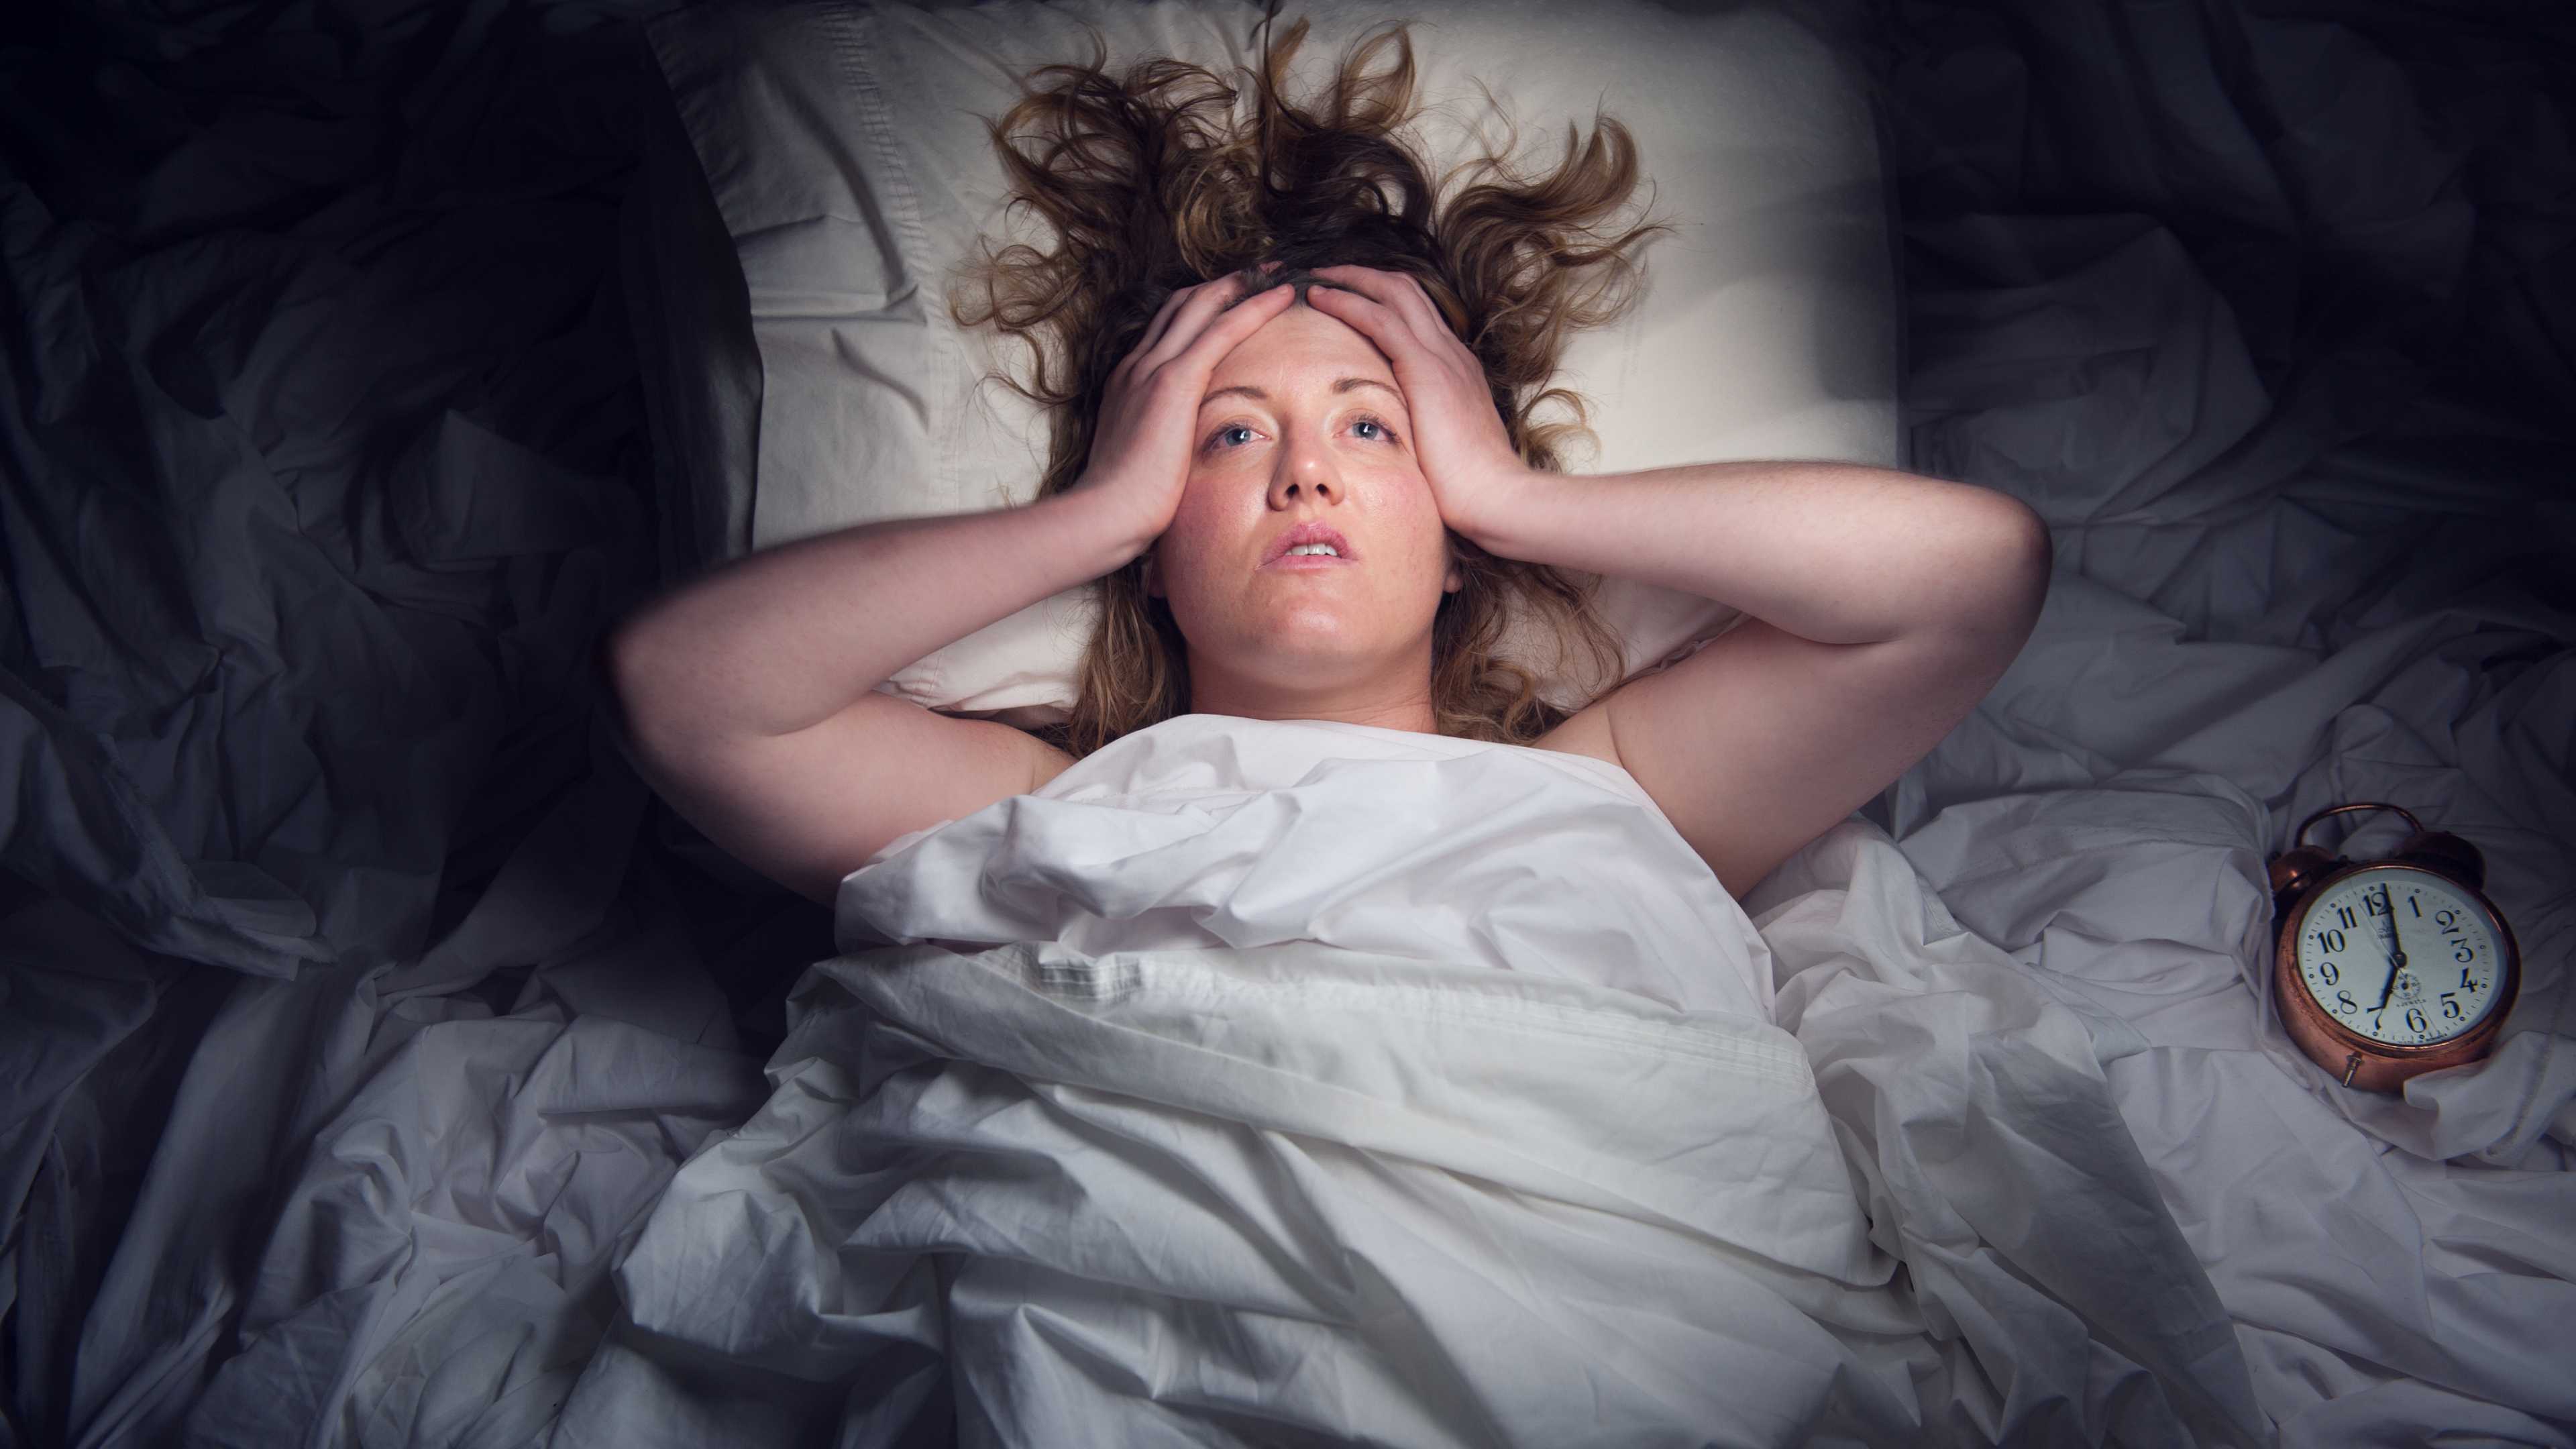 Перенесённый коронавирус в три раза увеличивает риск нарушений сна